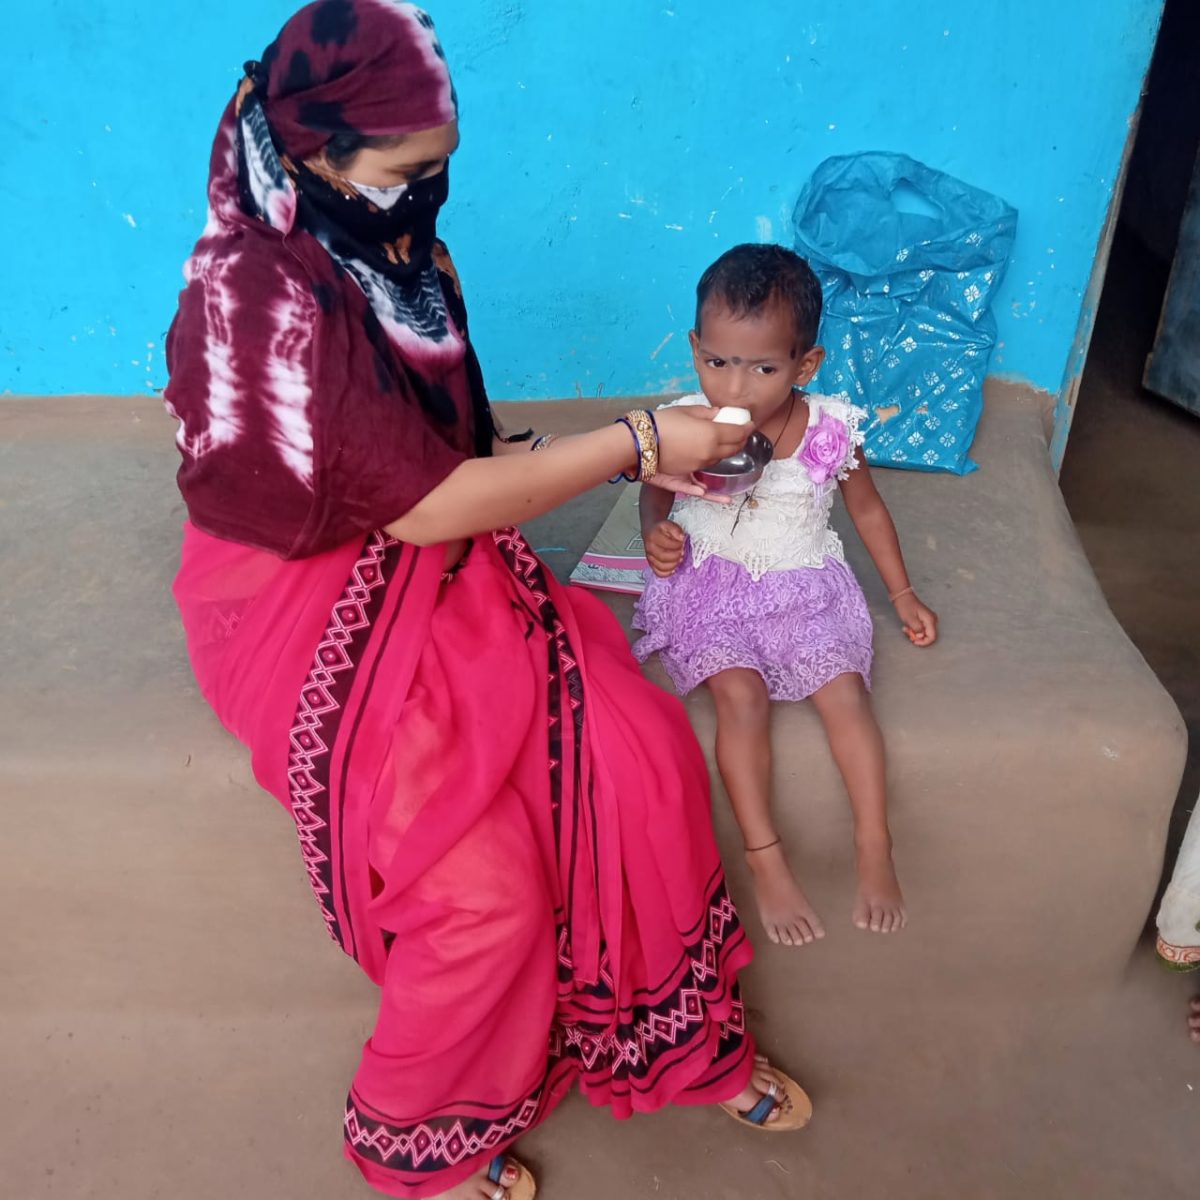 रायपुर : छत्तीसगढ़ के नक्सल प्रभावित जिला कोंडागांव में डेढ़ वर्ष में कुपोषित बच्चों की संख्या में आई 41.54 प्रतिशत की कमी